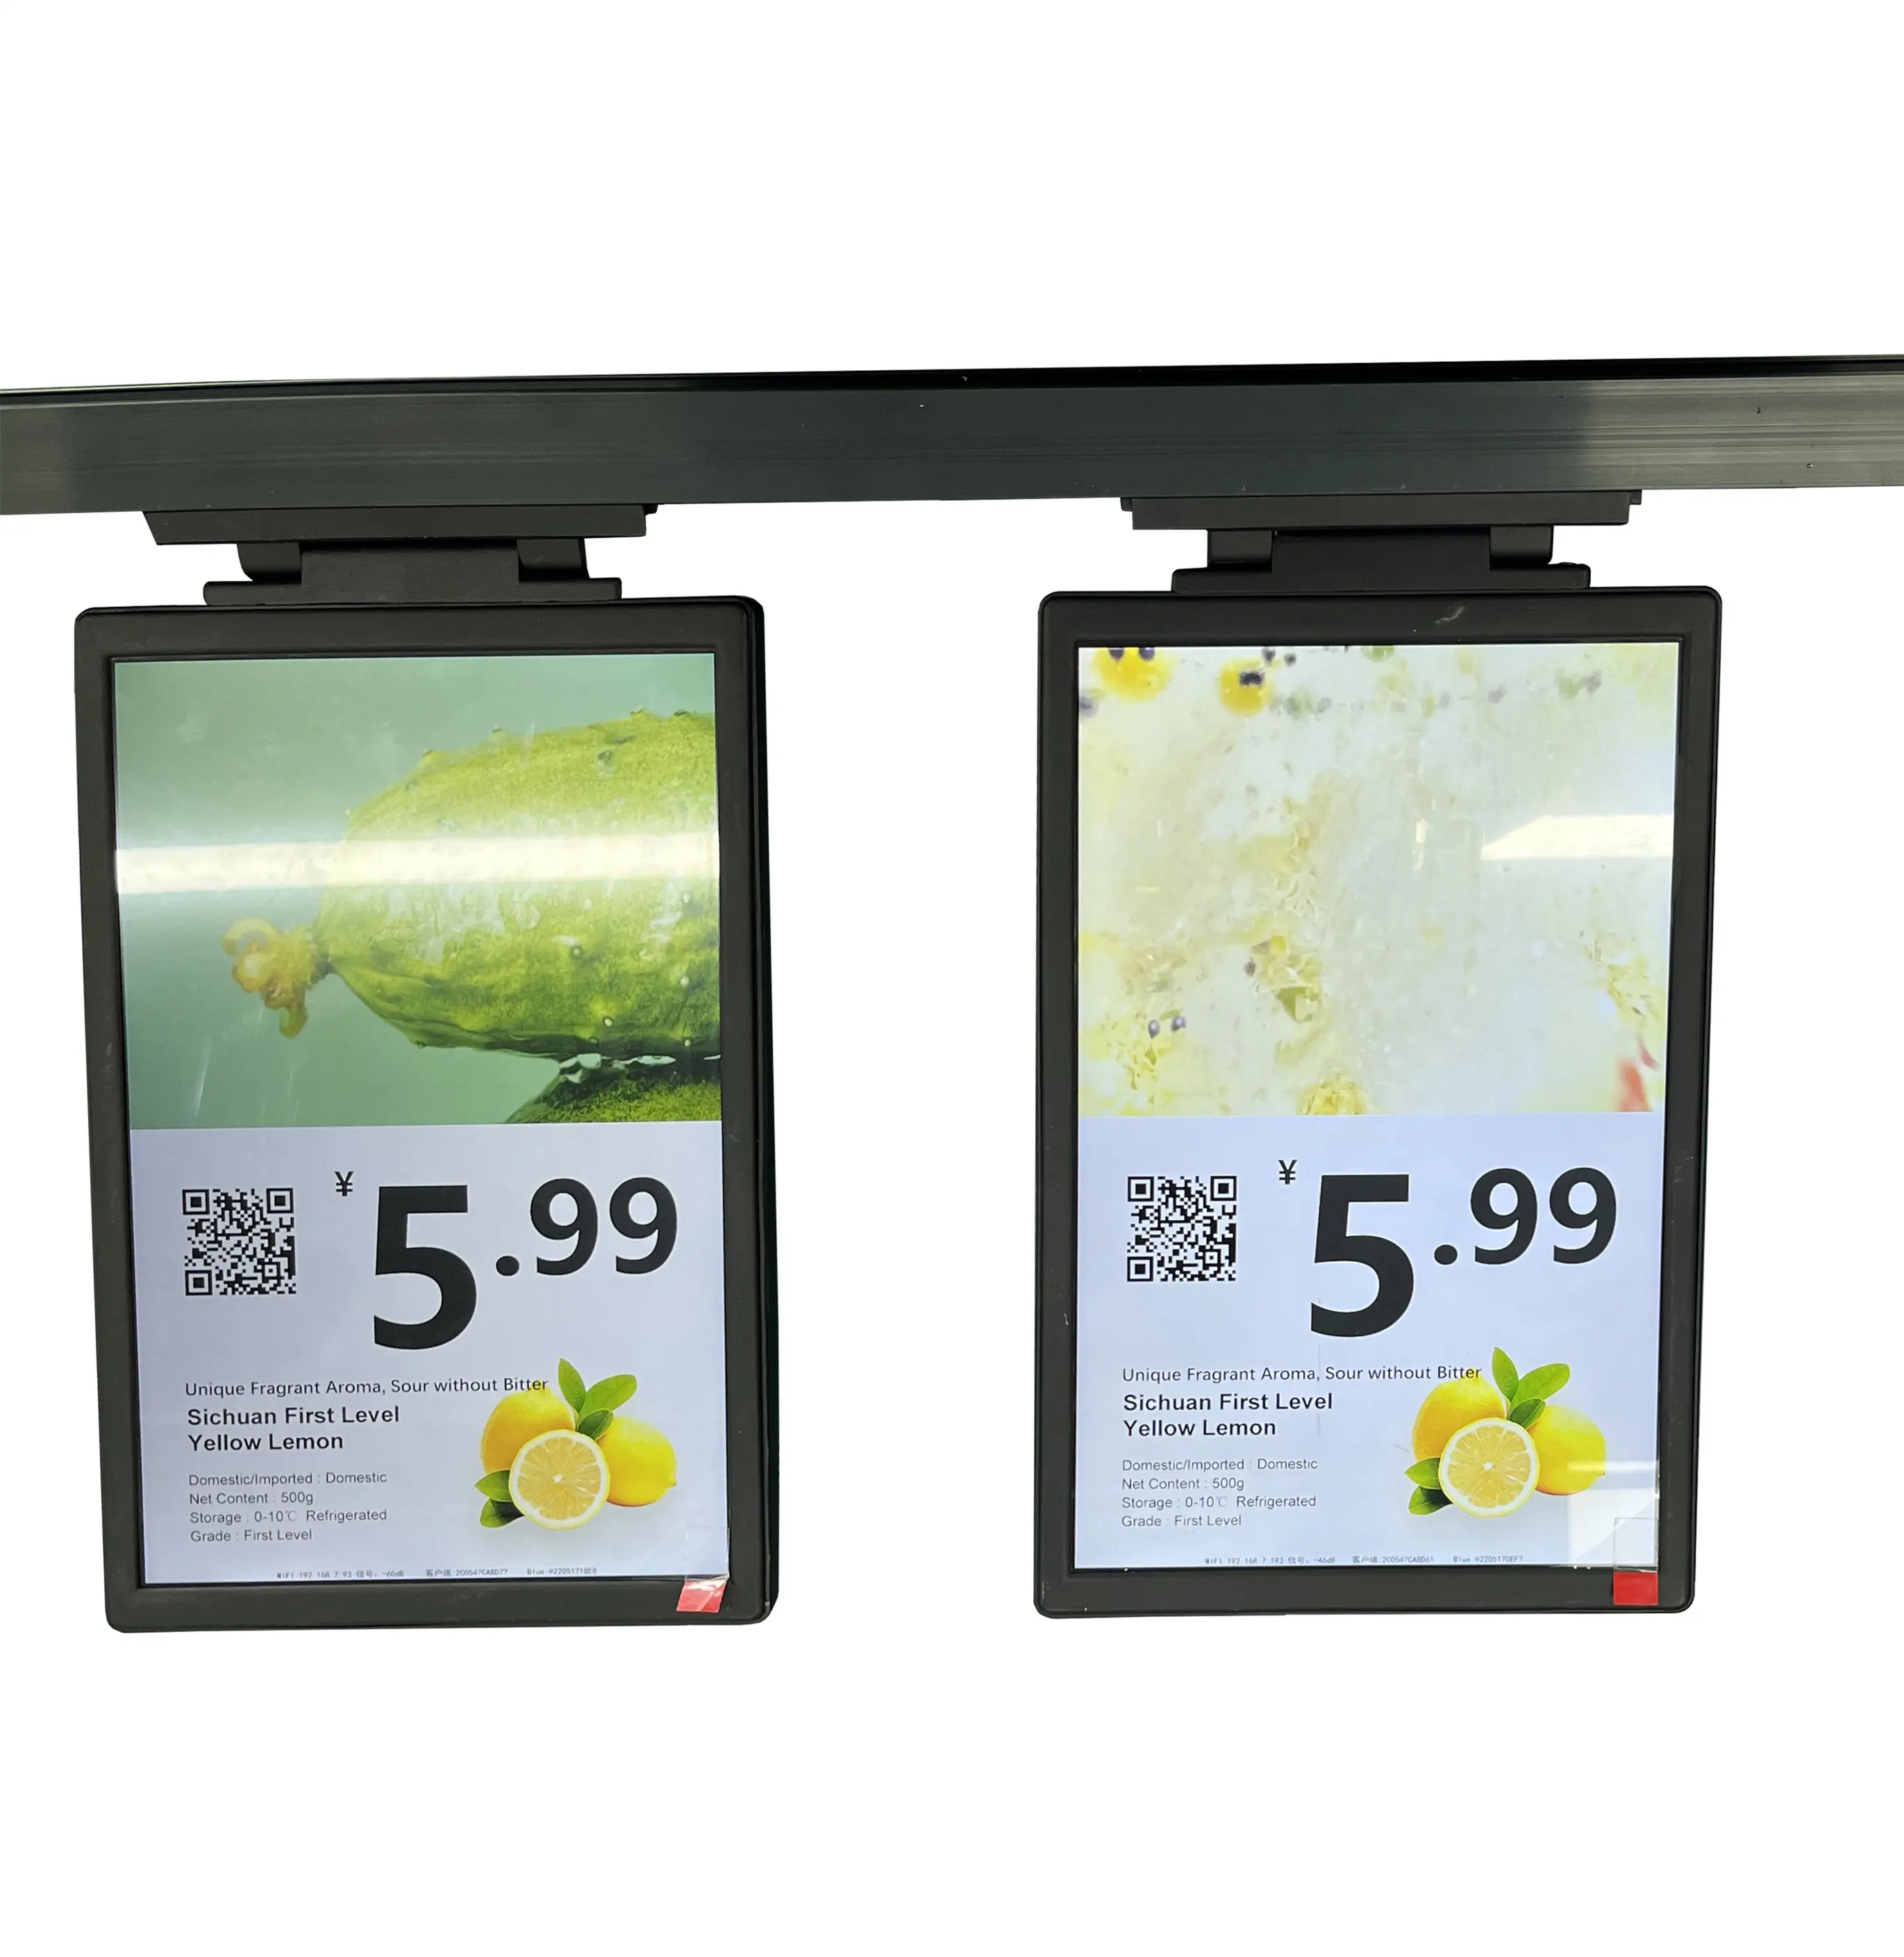 Cartellino del prezzo elettronico pannello Display LCD a colori per prezzi di mercato